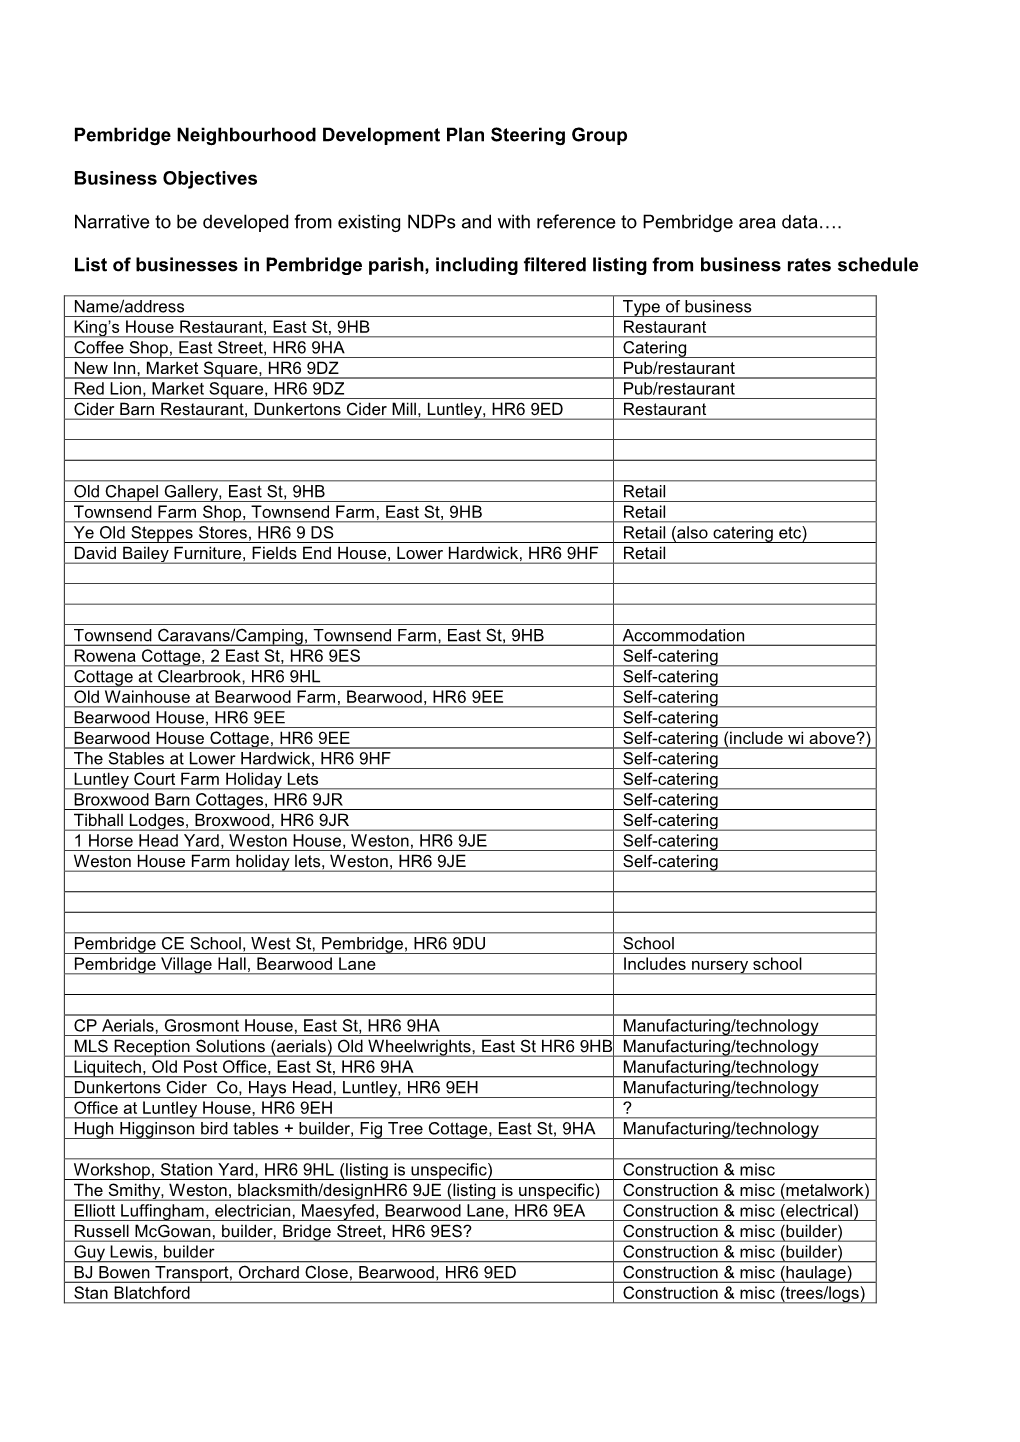 List of Known Businesses in Pembridge Parish